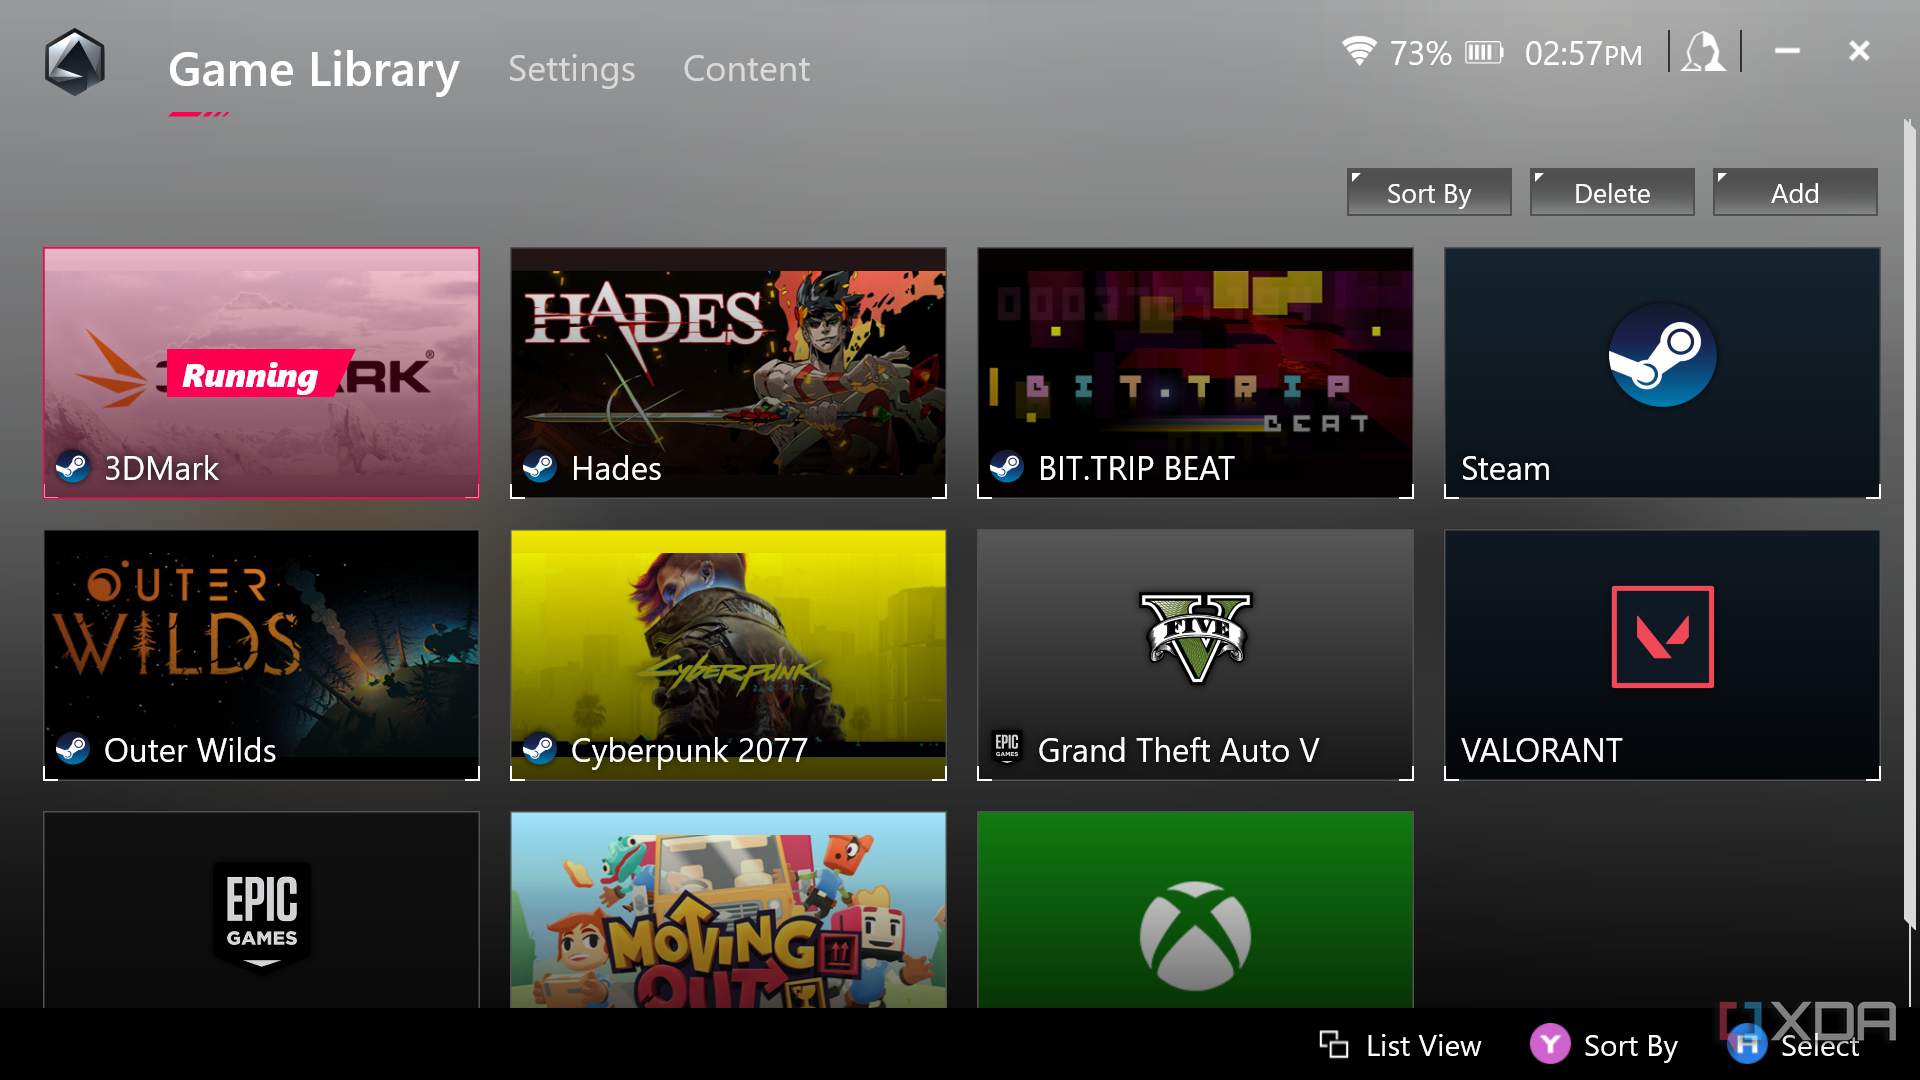 Game Library menu screen.